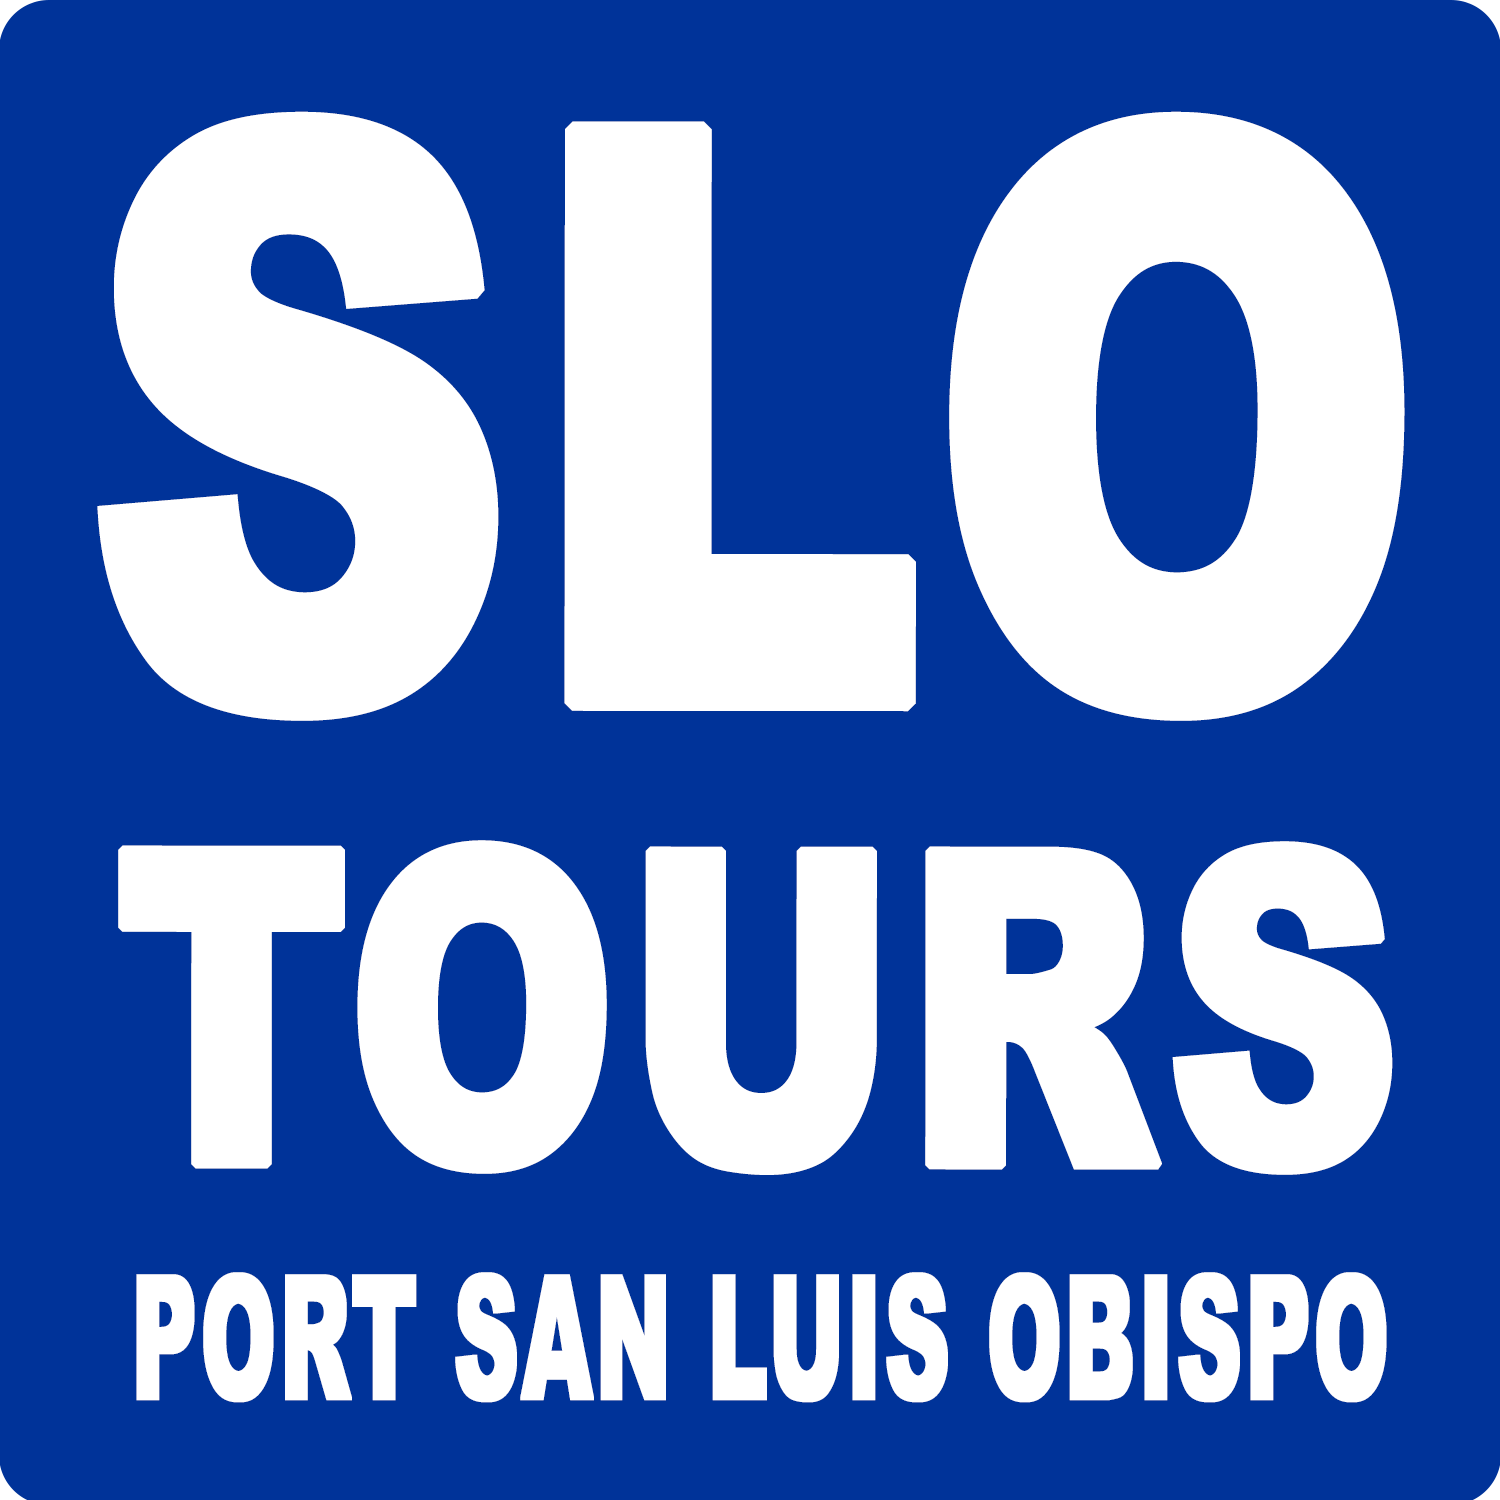 San Luis Obispo Tours